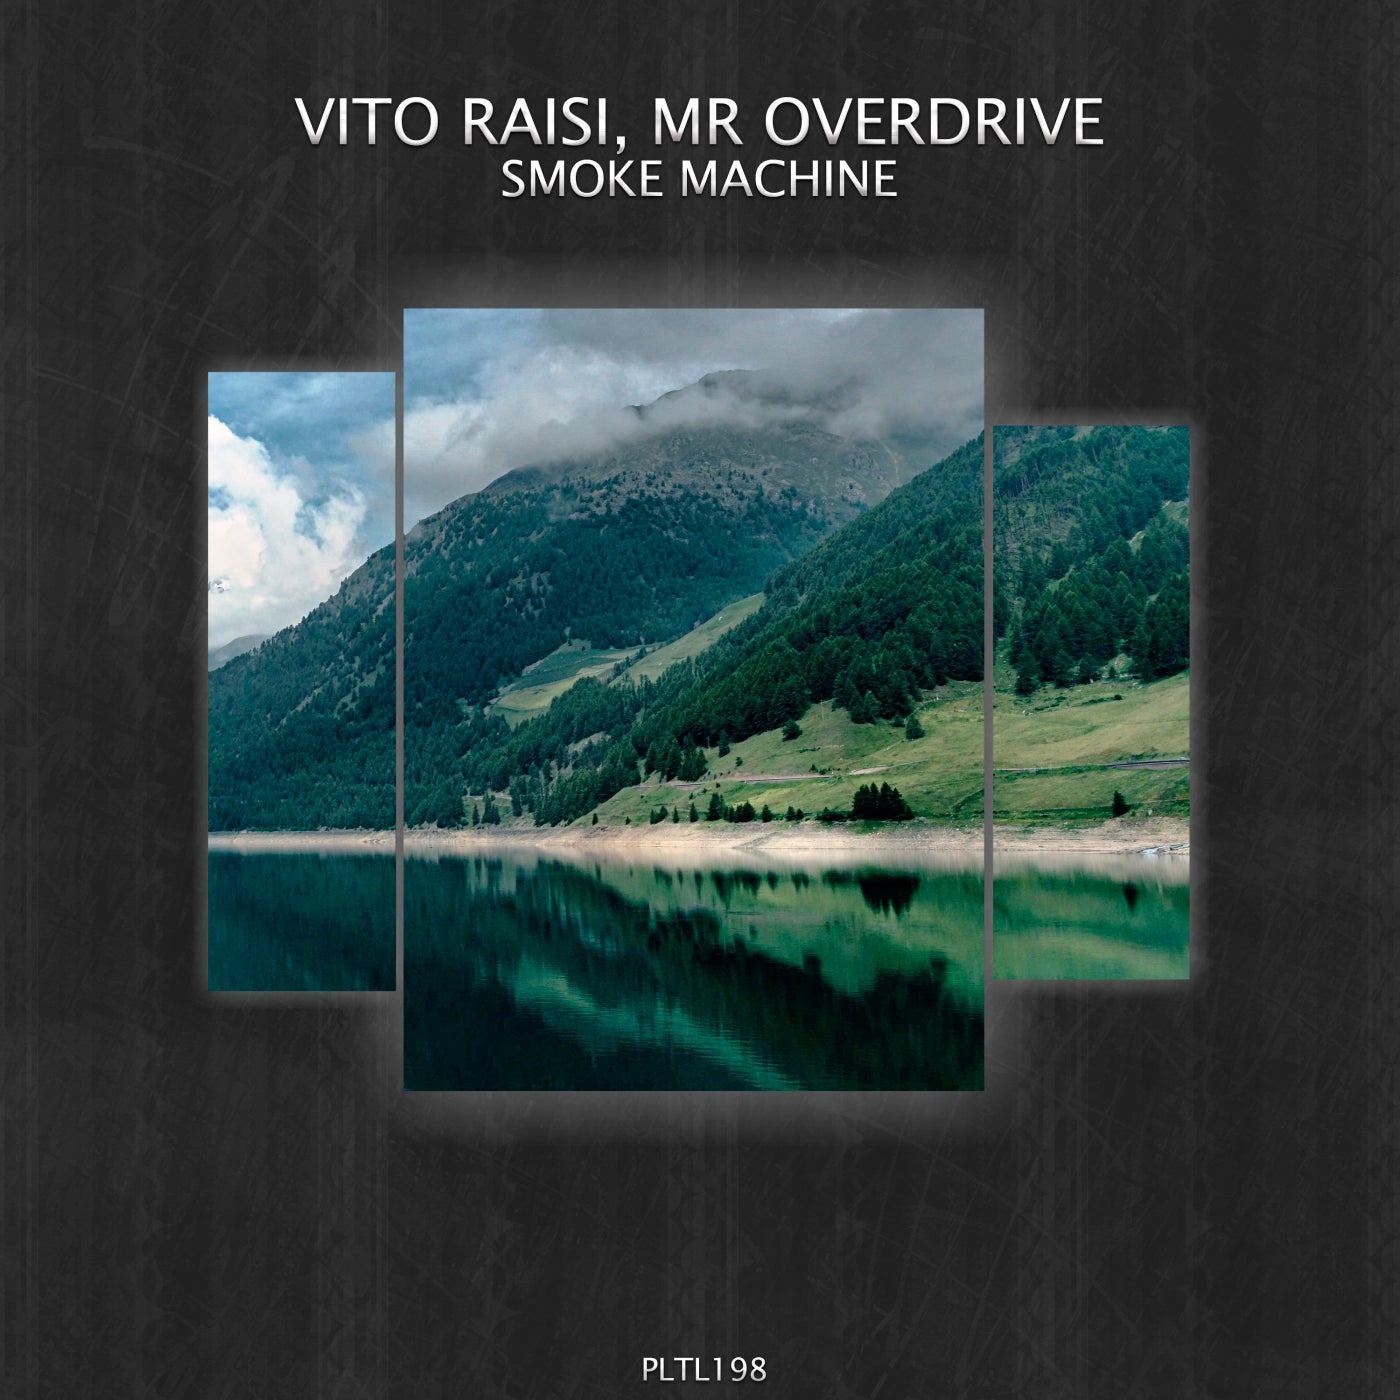 Vito Raisi, Mr Overdrive – Smoke Machine [PLTL198]